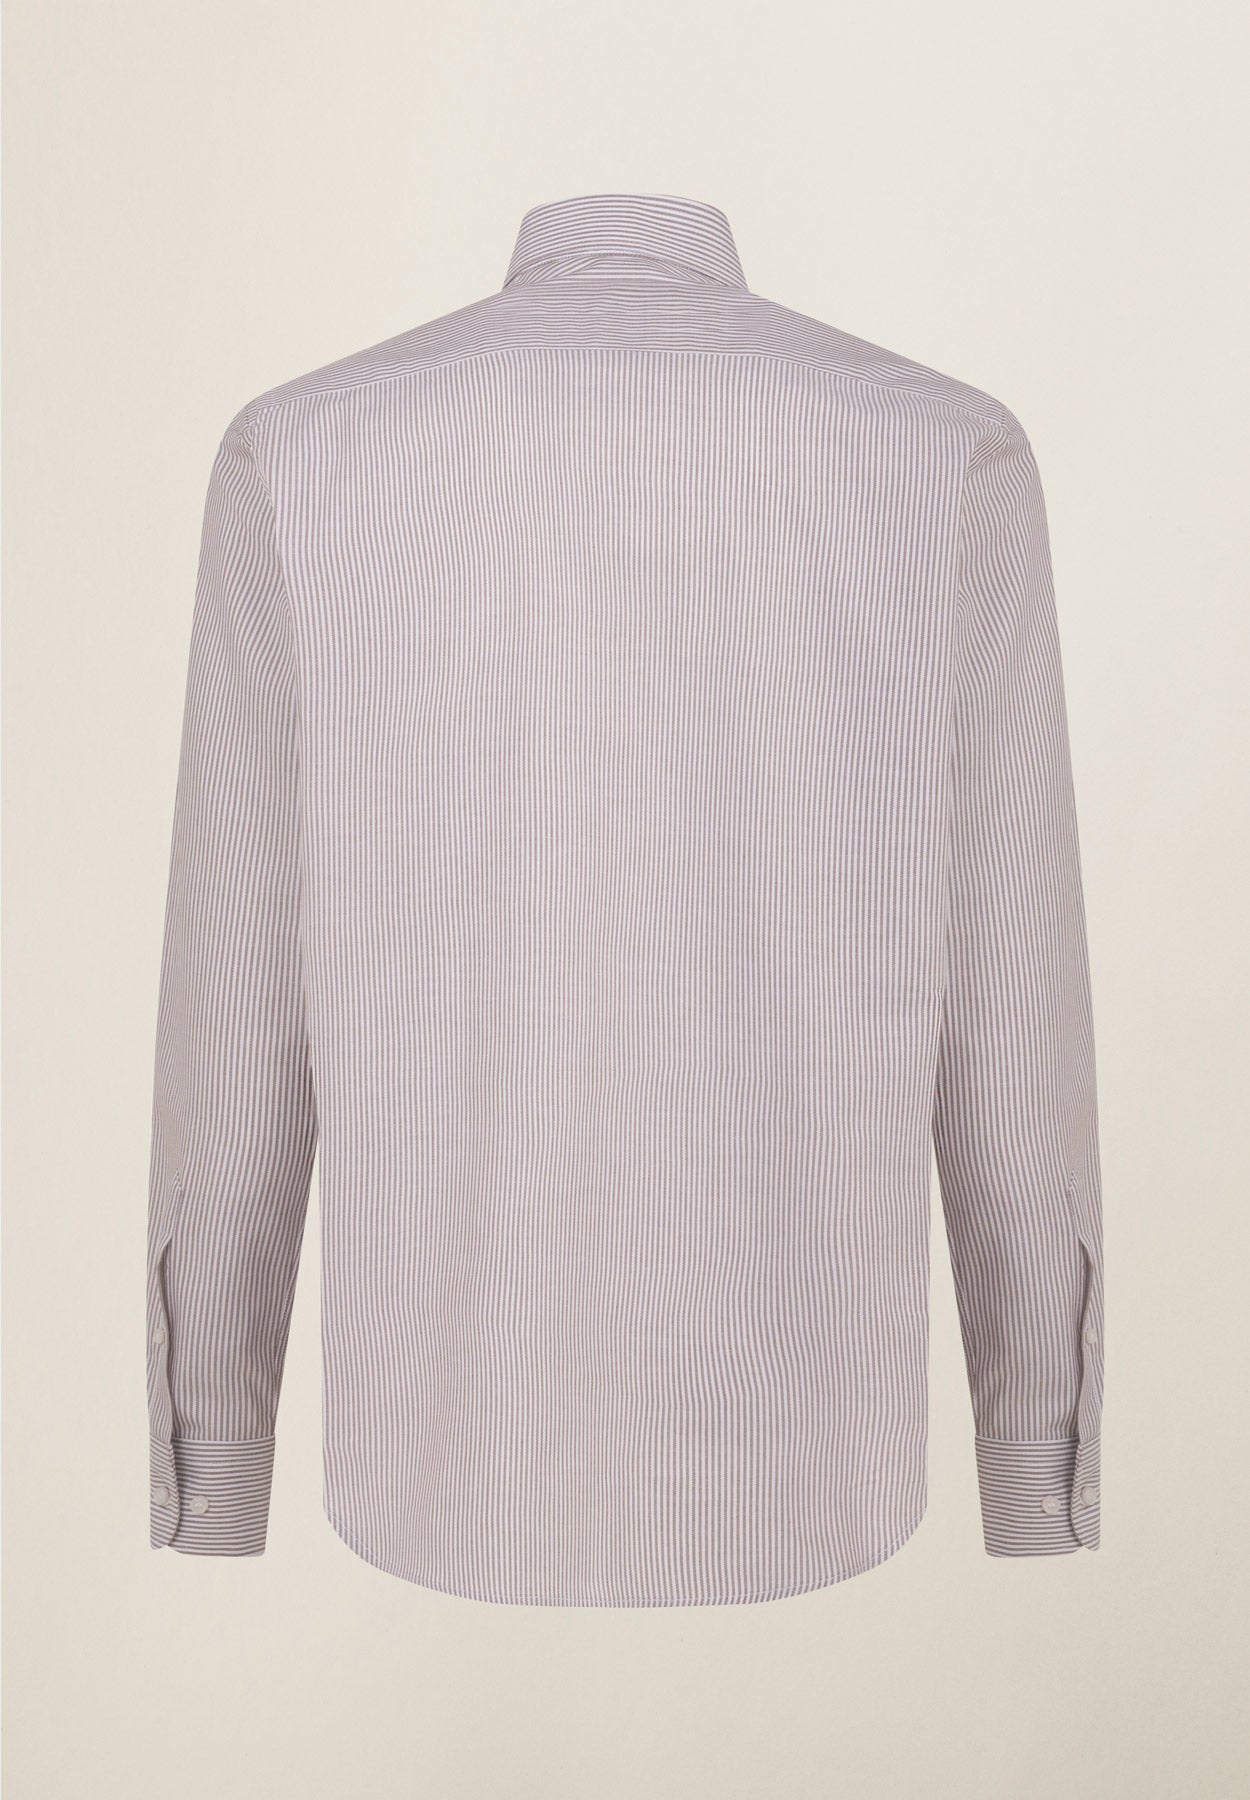 Braun-weiß gestreiftes Baumwollhemd mit normaler Passform